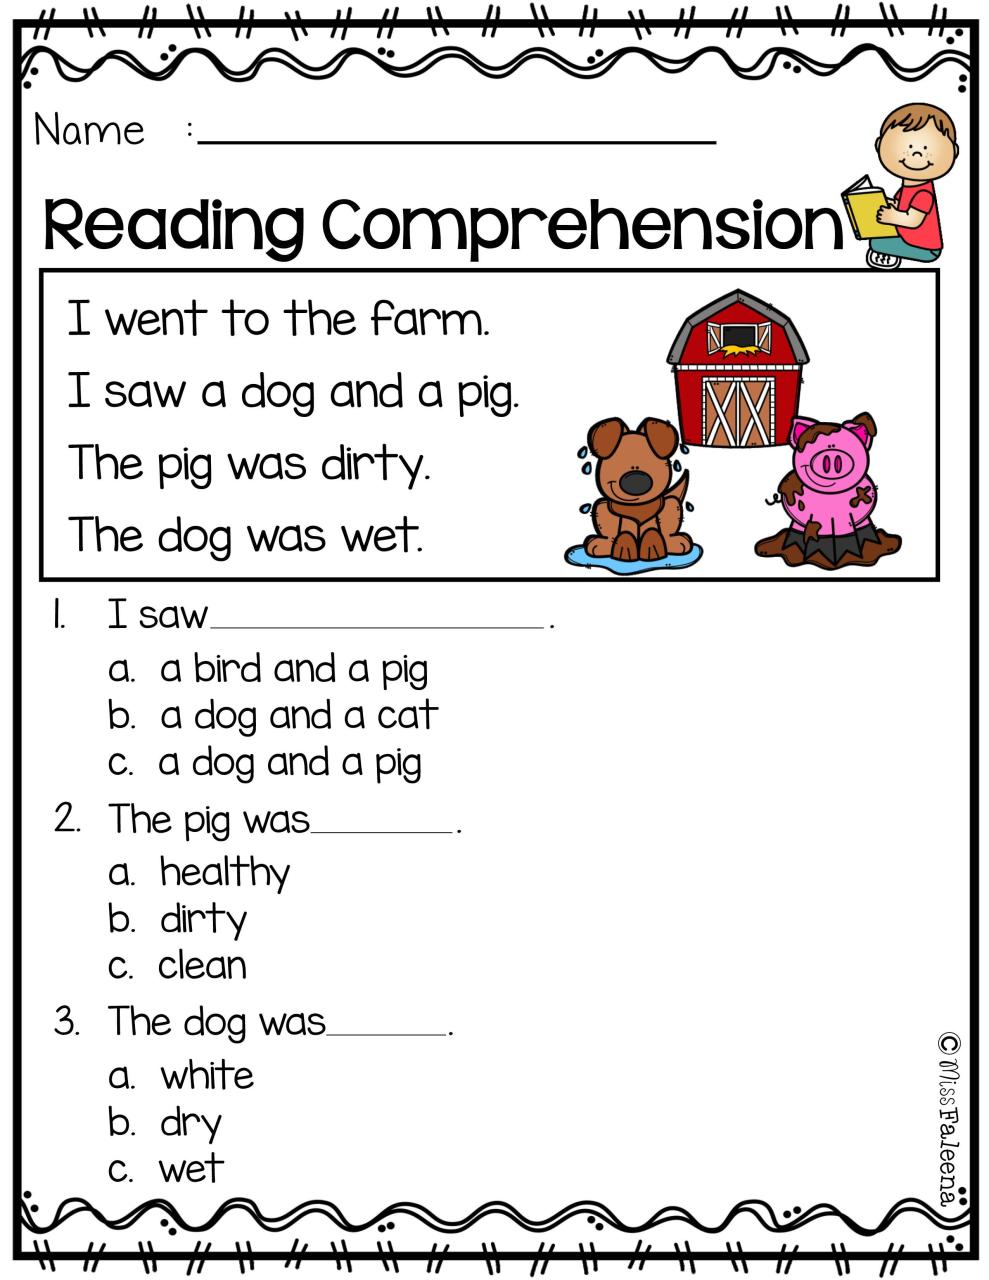 Reading Comprehension Workbooks For Kindergarten